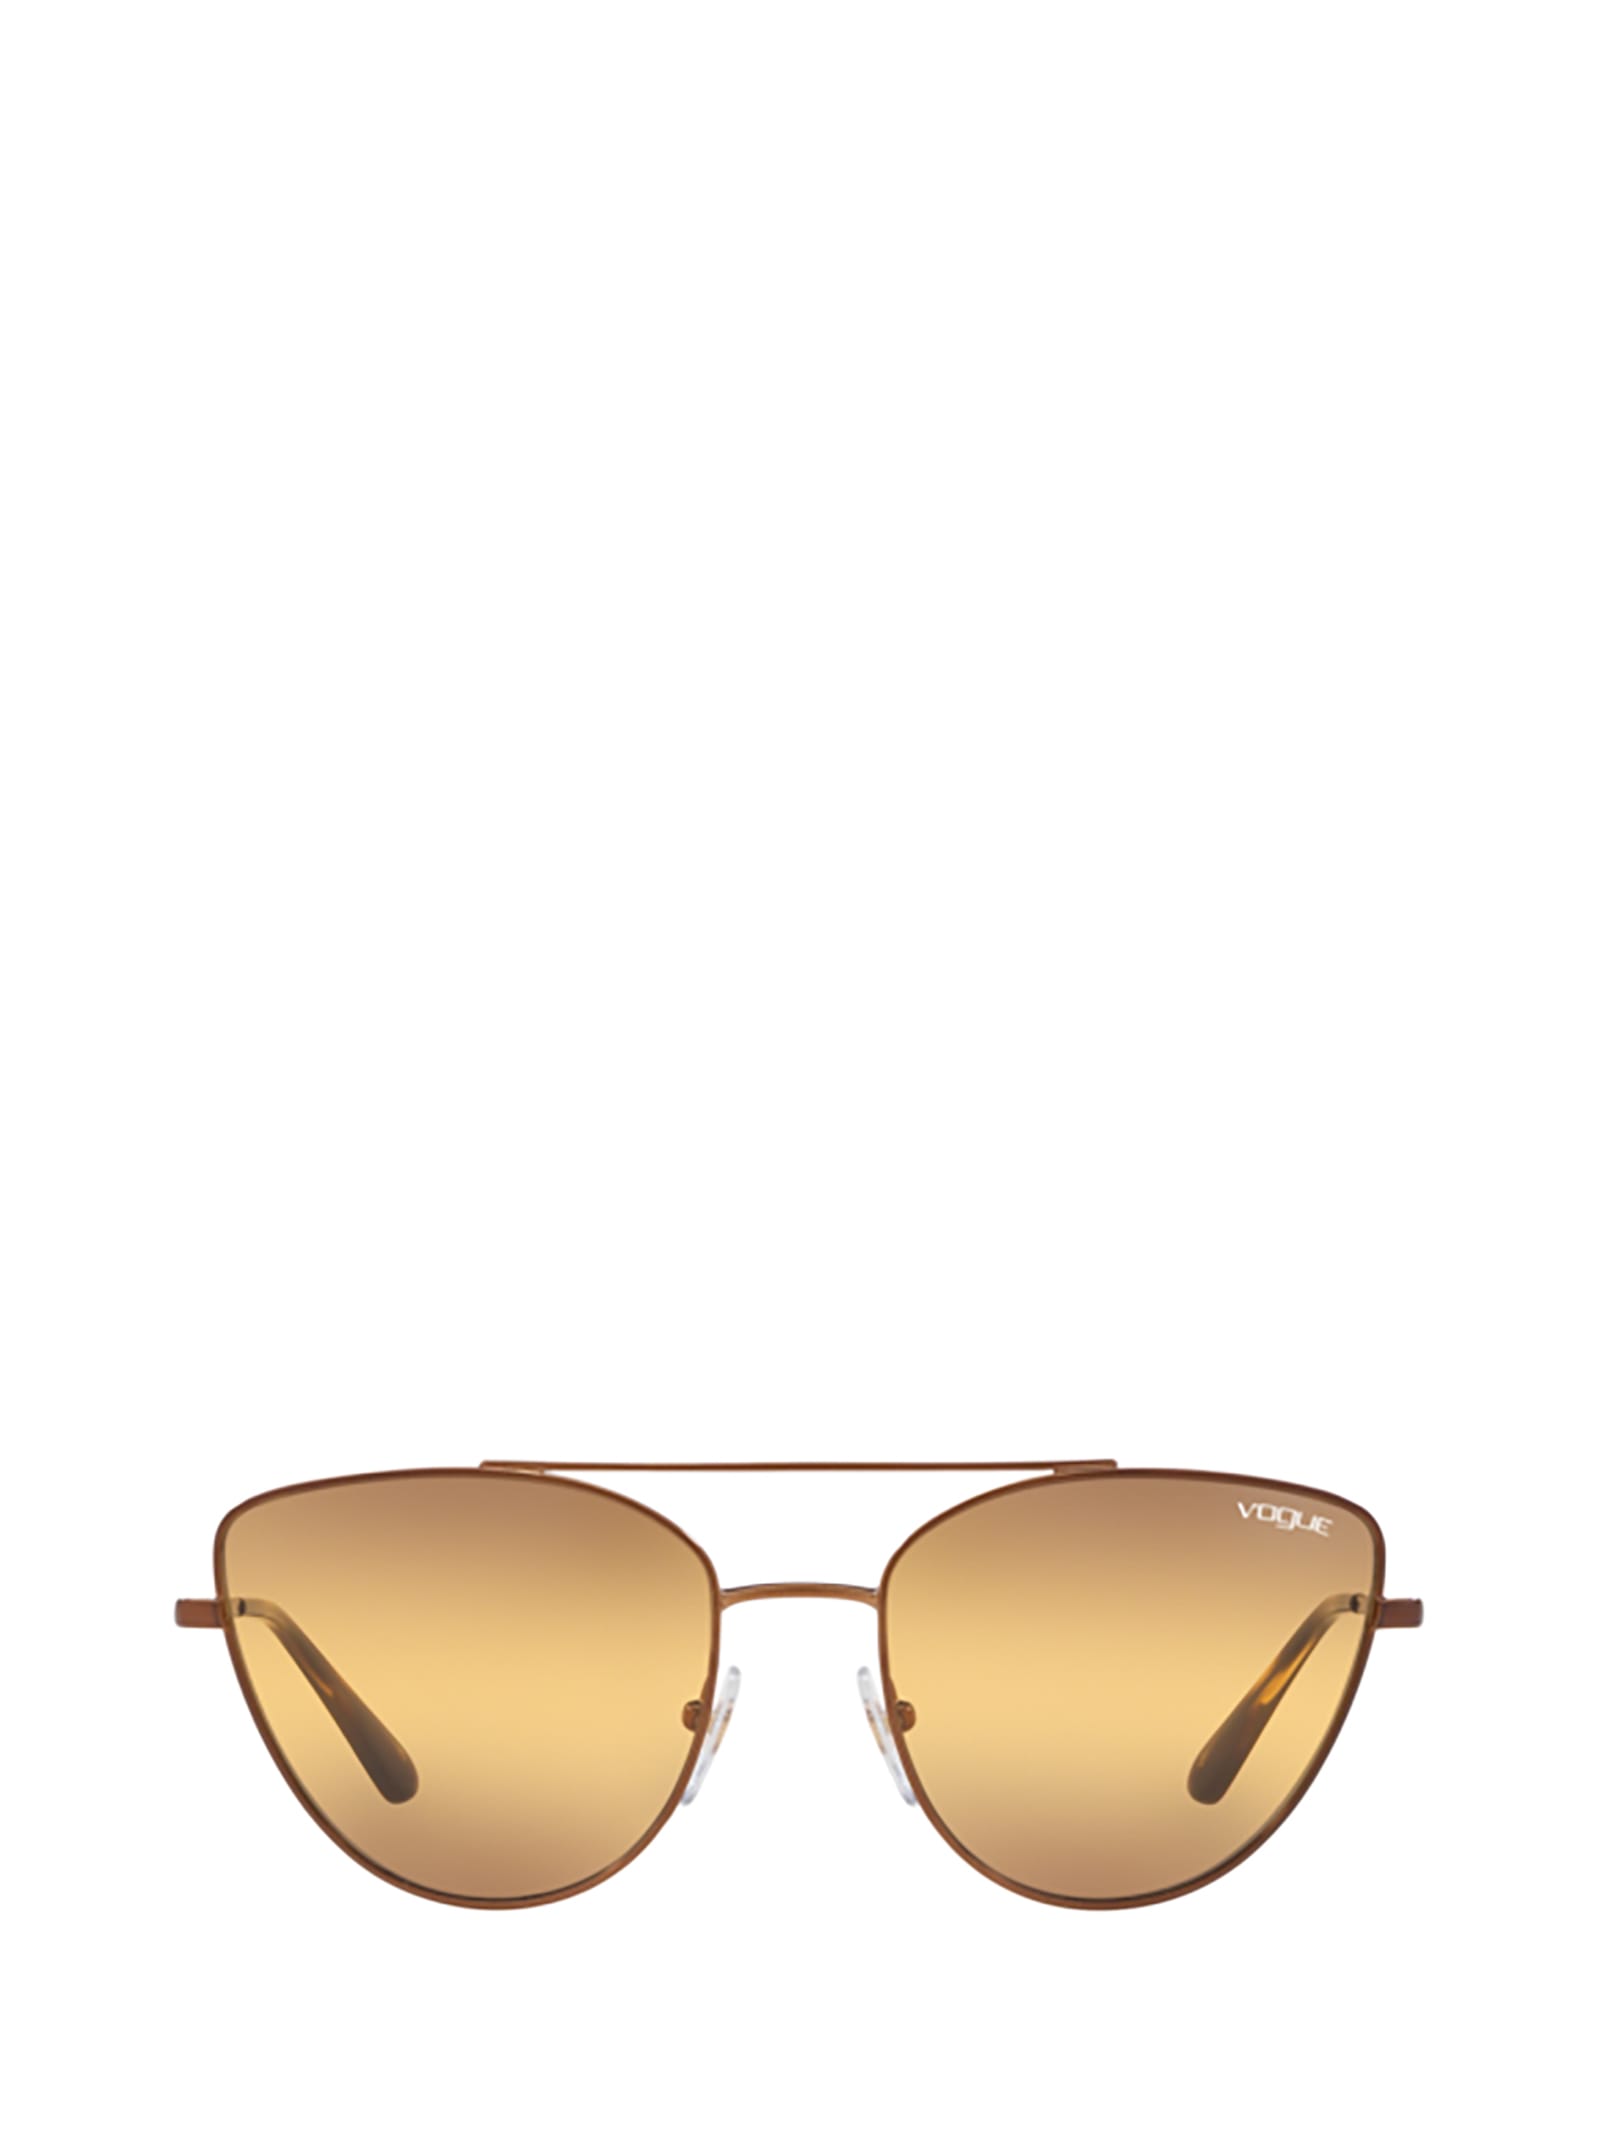 Vogue Eyewear Vogue Vo4130s Copper Sunglasses